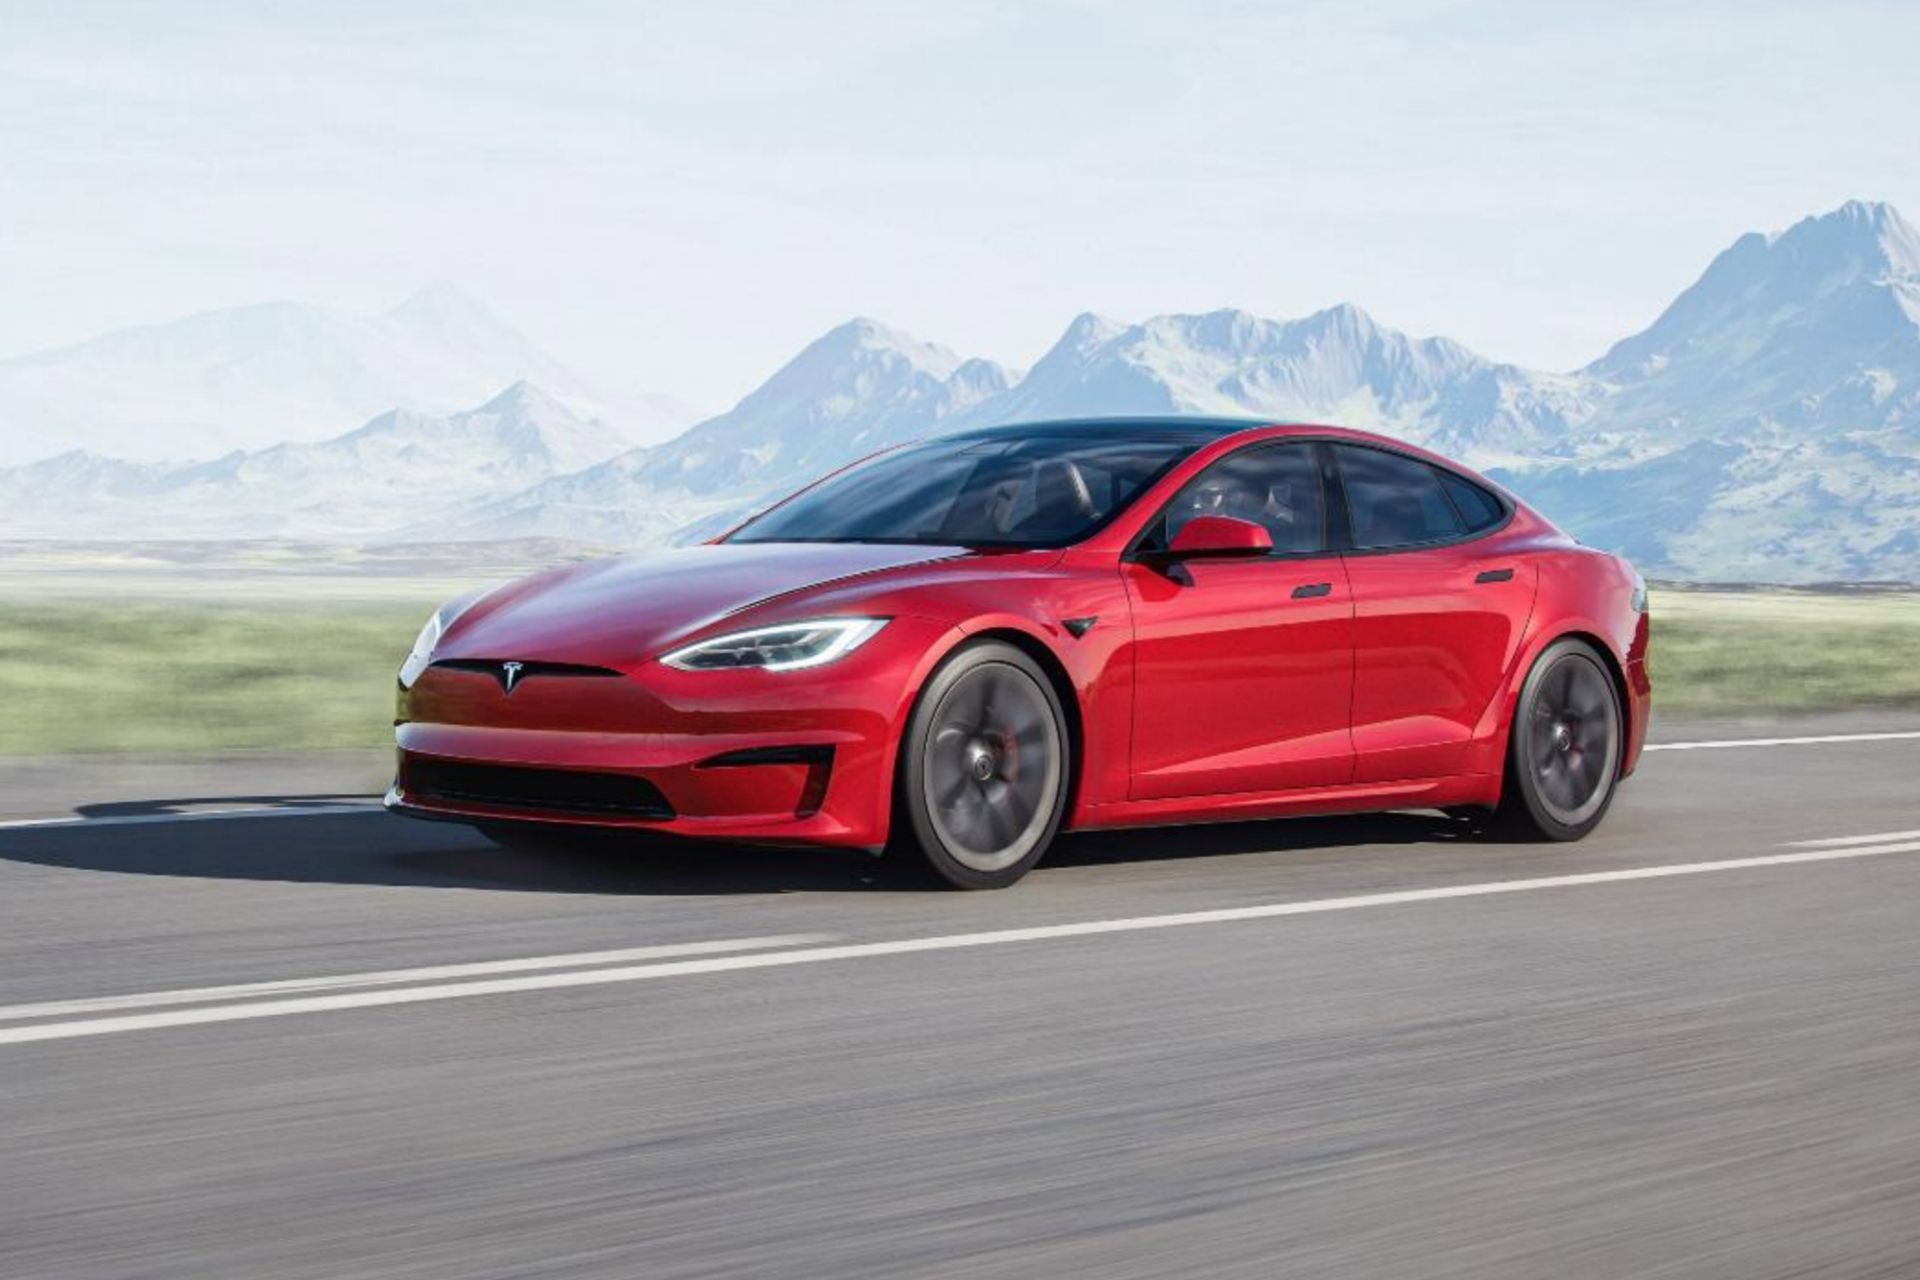 خودرو تسلا مدل اس 2021 / Tesla Model S رنگ قرمز در جاده از نمای جلو سمت چپ آسمان صاف